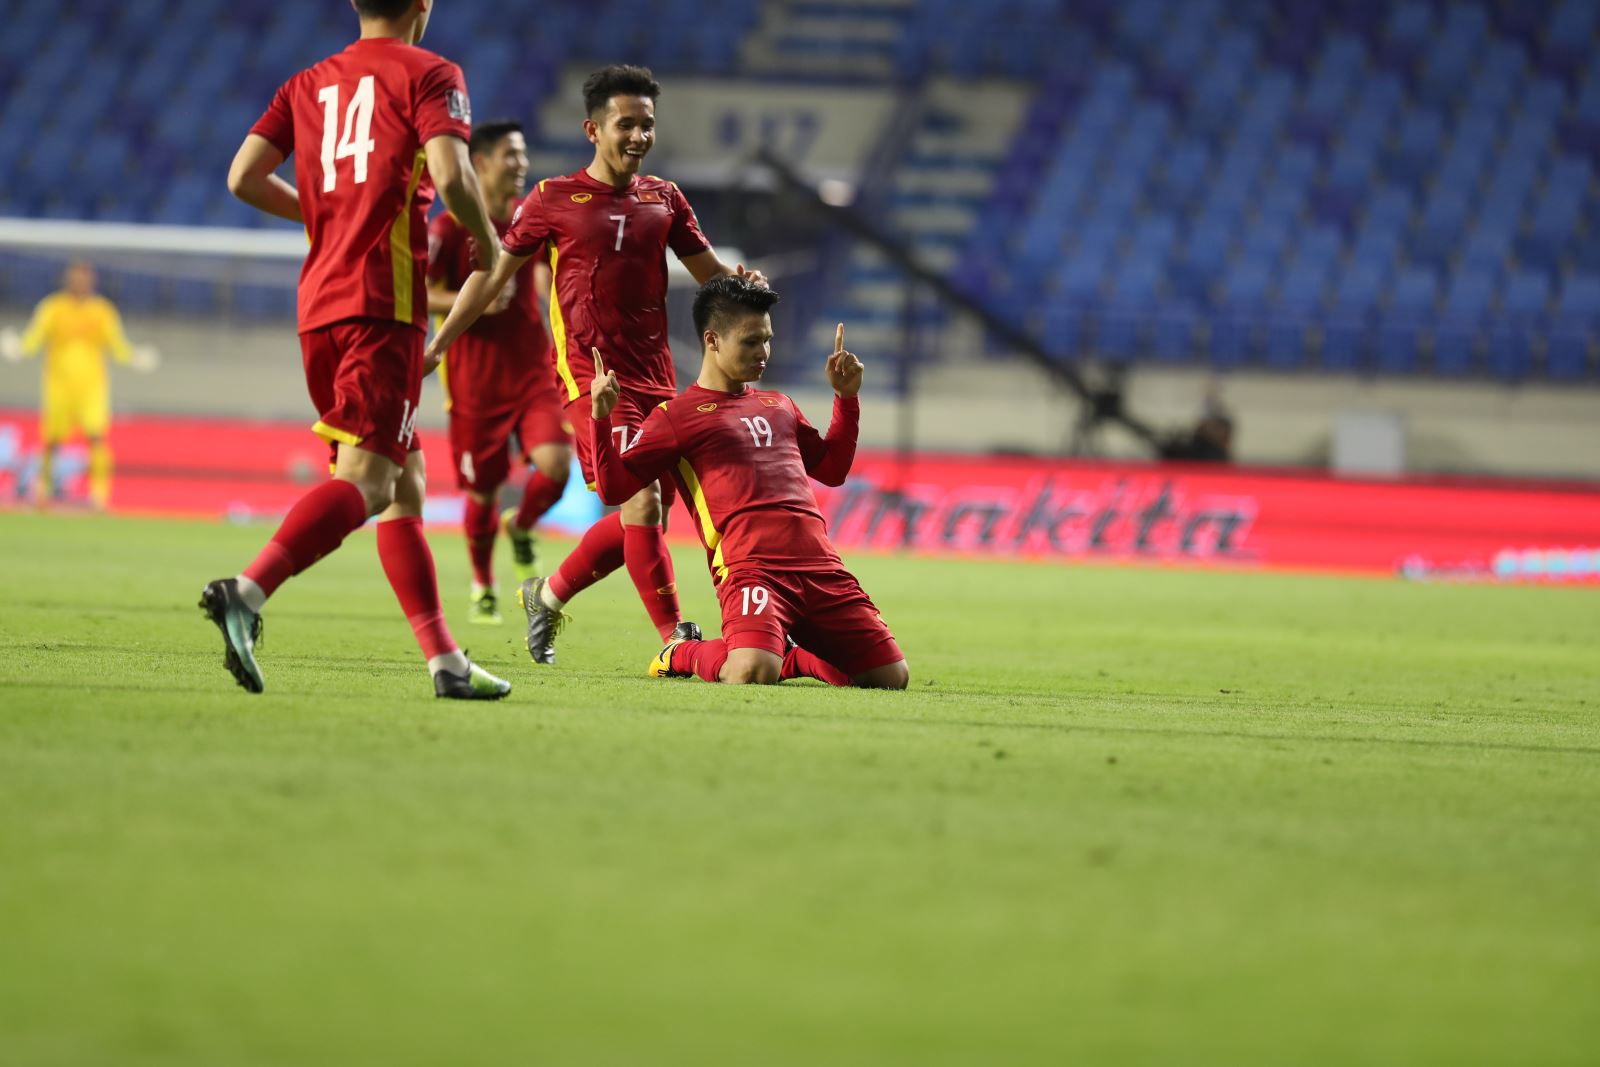 Hồng Duy kiến tạo cả 2 bàn thắng đầu tiên, mở ra chiến thắng cho đội tuyển Việt Nam trước Indonesia. Ảnh: Hoàng Linh